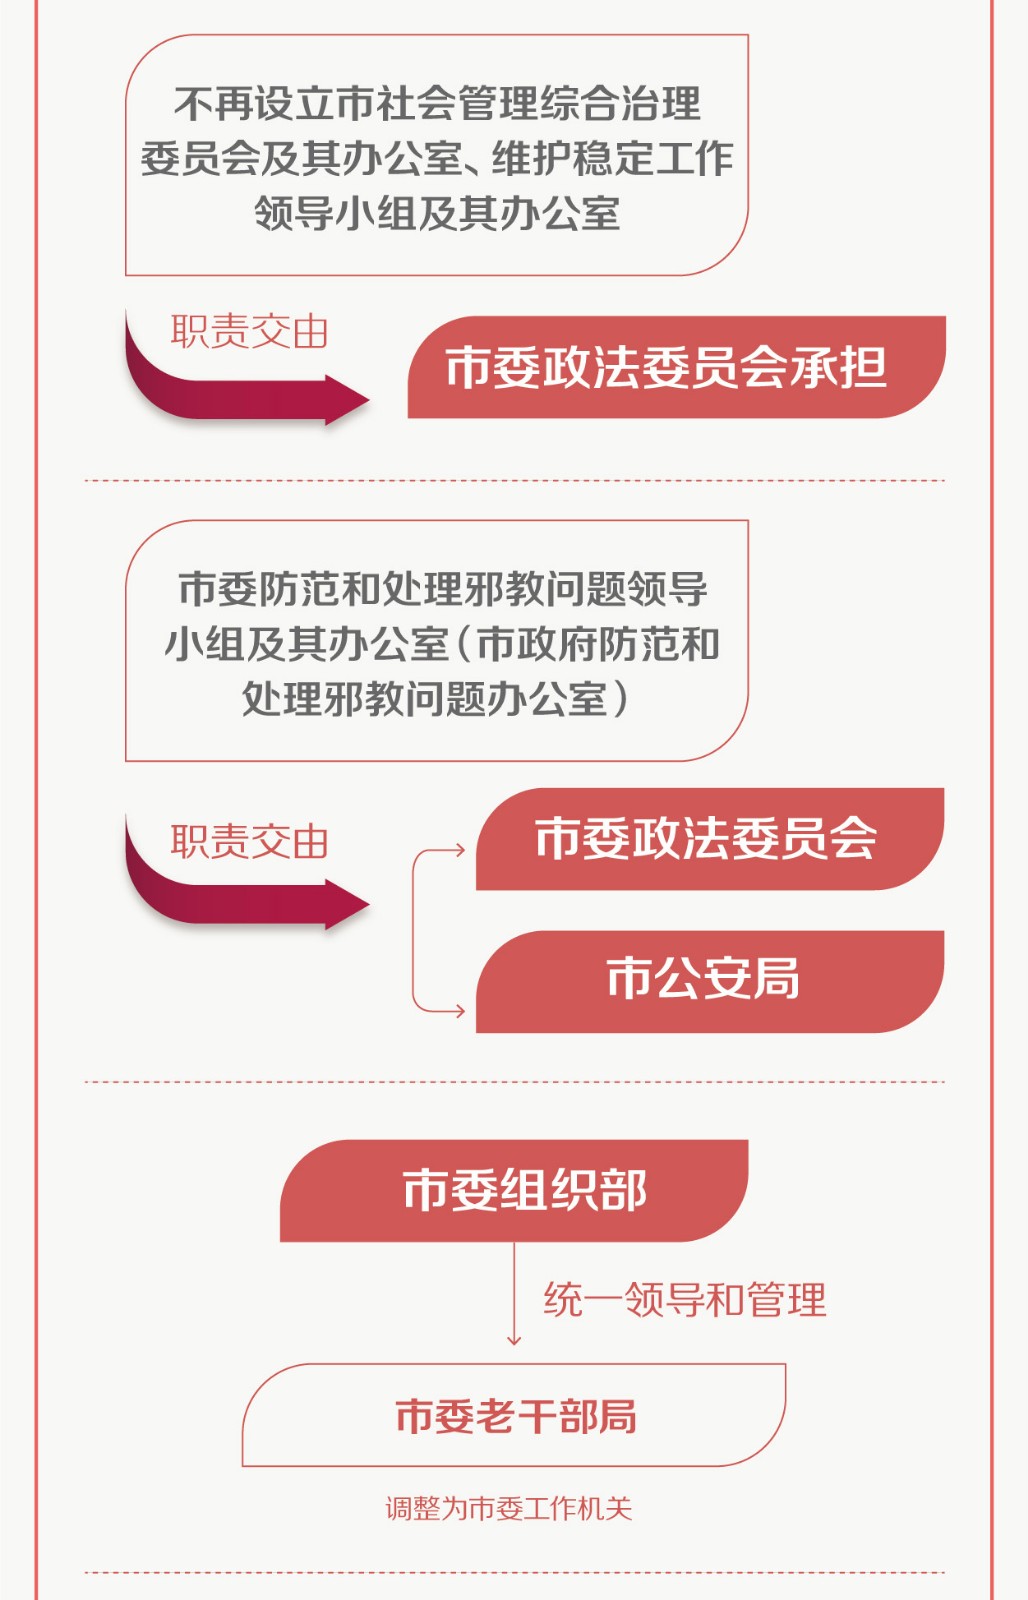 红网独家图解:一图看懂郴州市机构改革方案